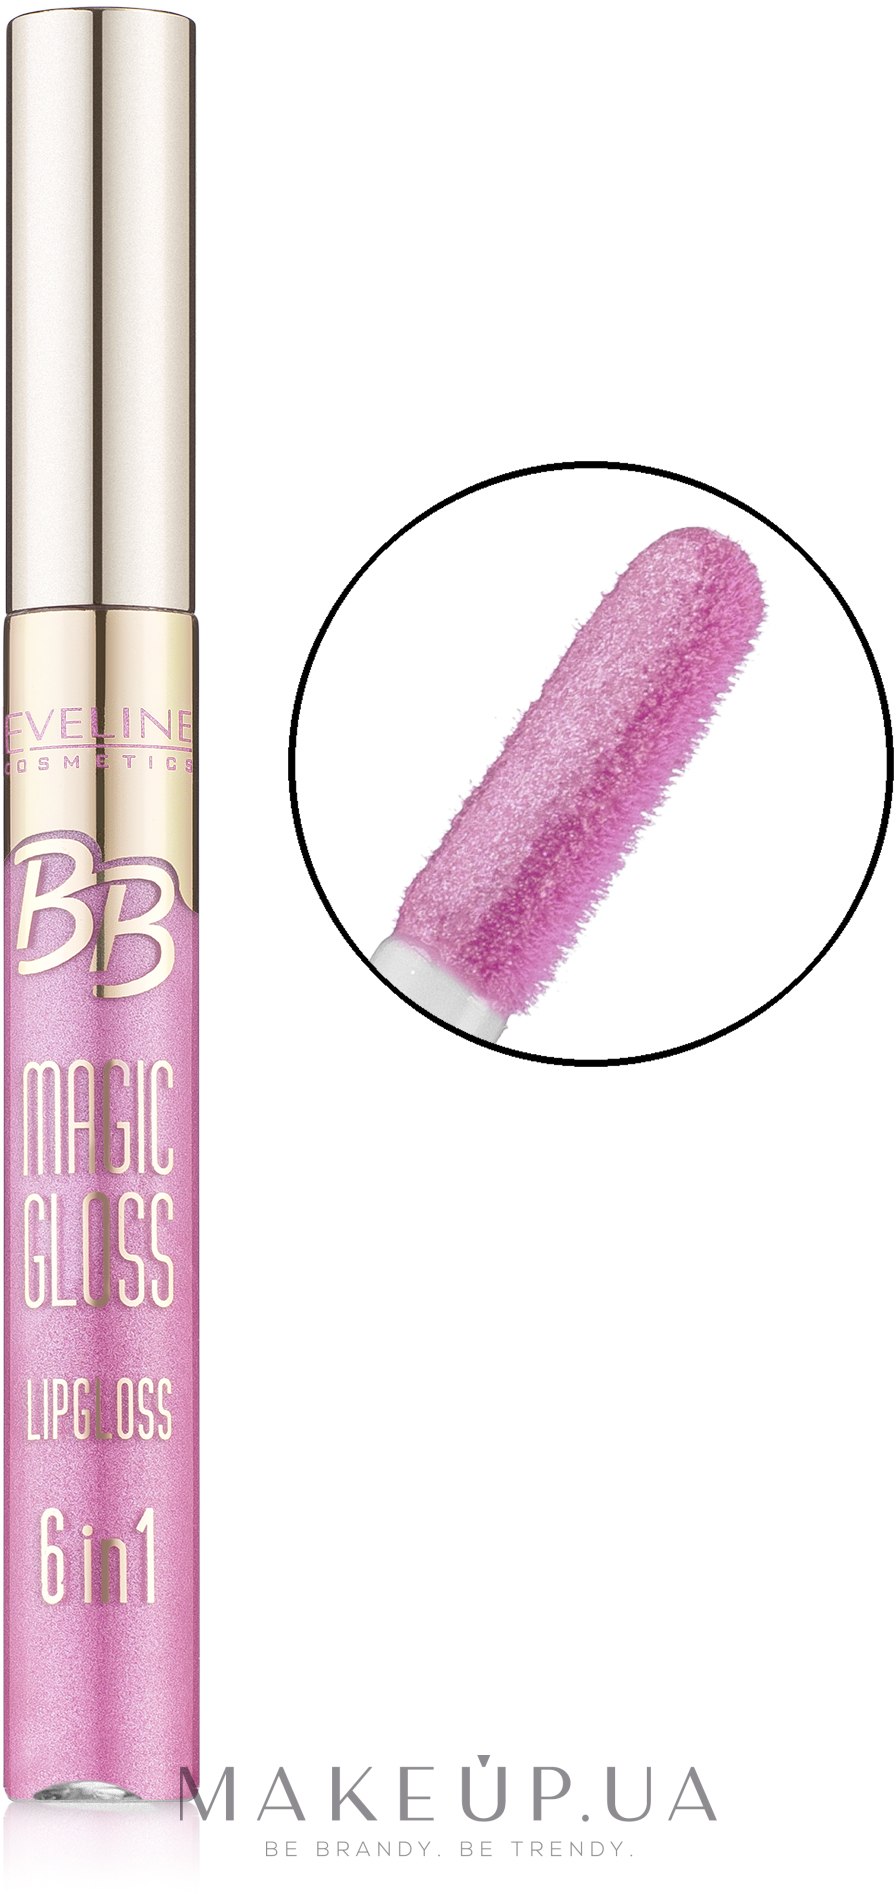 Блиск для губ - Eveline Cosmetics BB Magic Gloss Lipgloss 6 w 1 — фото 359